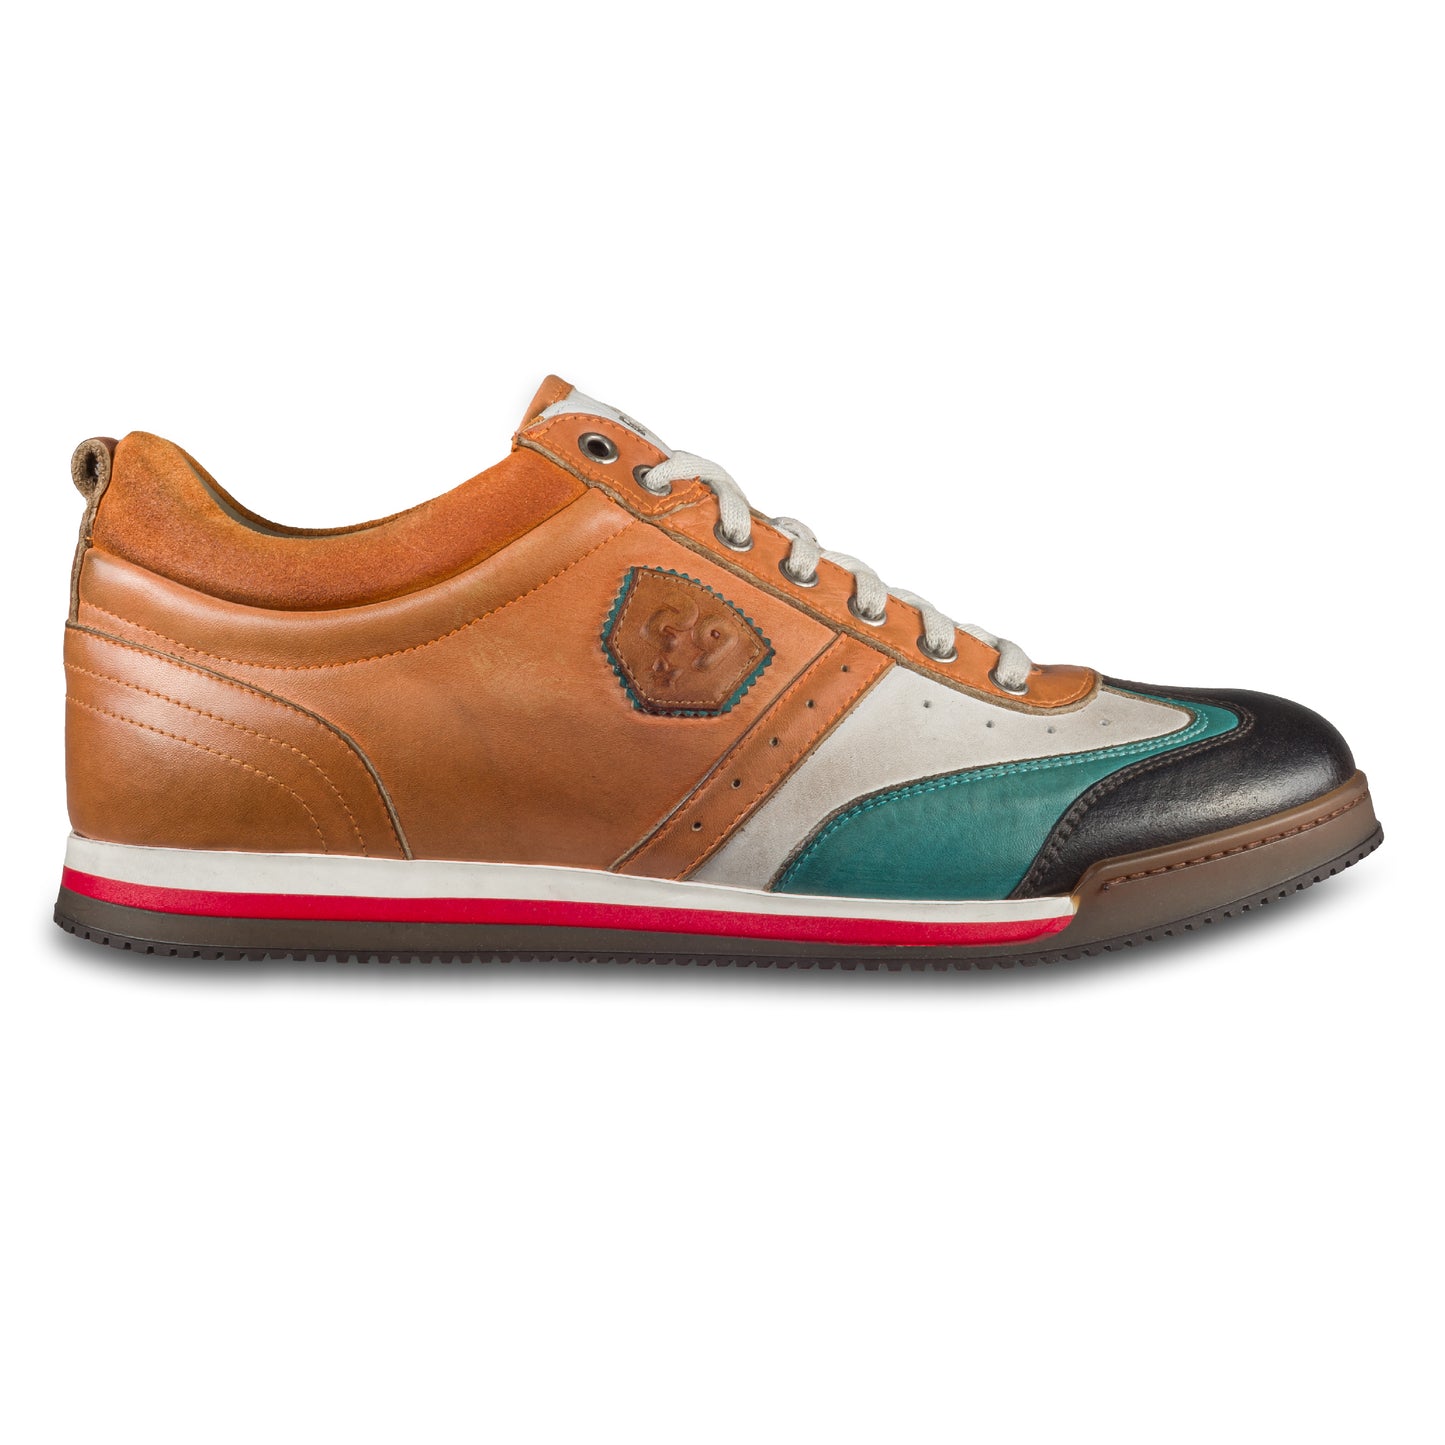 KAMO-GUTSU Herren Leder Sneaker orange / weiß / türkis / grau, Retro-Optik. Modell SCUDO-005 siena combi. Handgefertigt in Italien. Ansicht der Außenseite rechter Schuh. 